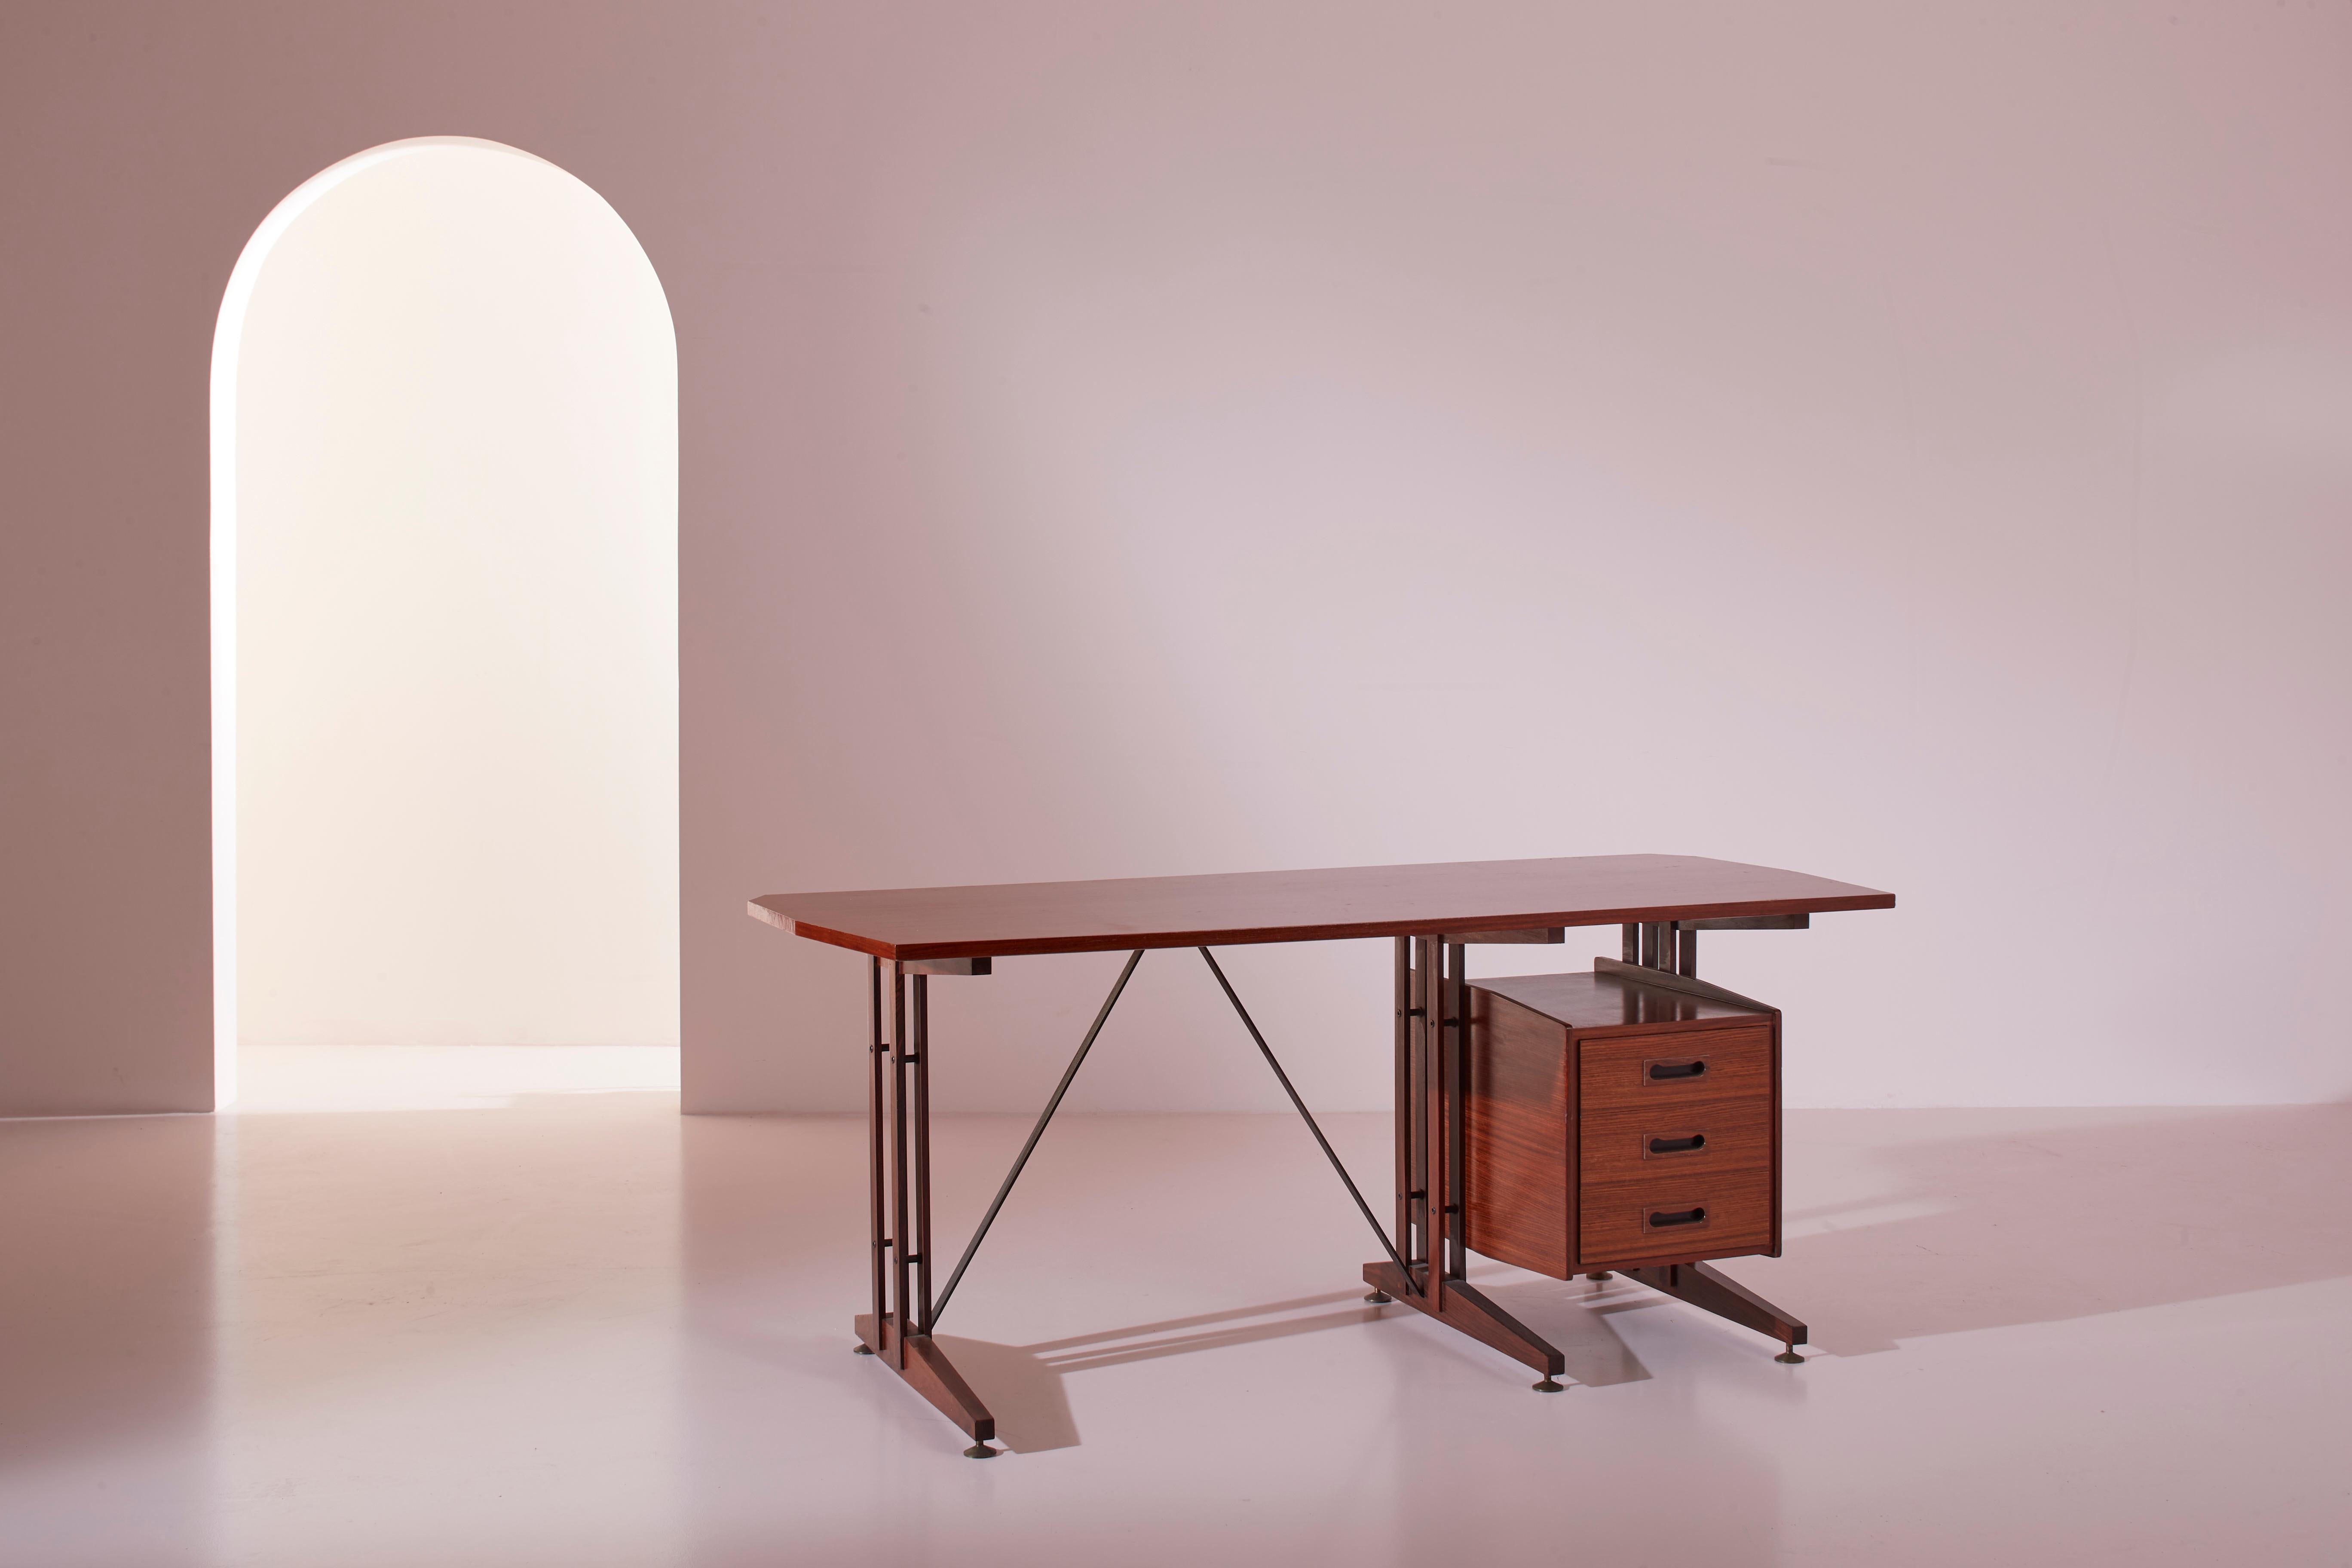 Ein schöner italienischer Schreibtisch aus Teakholz und Metall, hergestellt von ILA (Industria Lombarda Arredi), Modell 